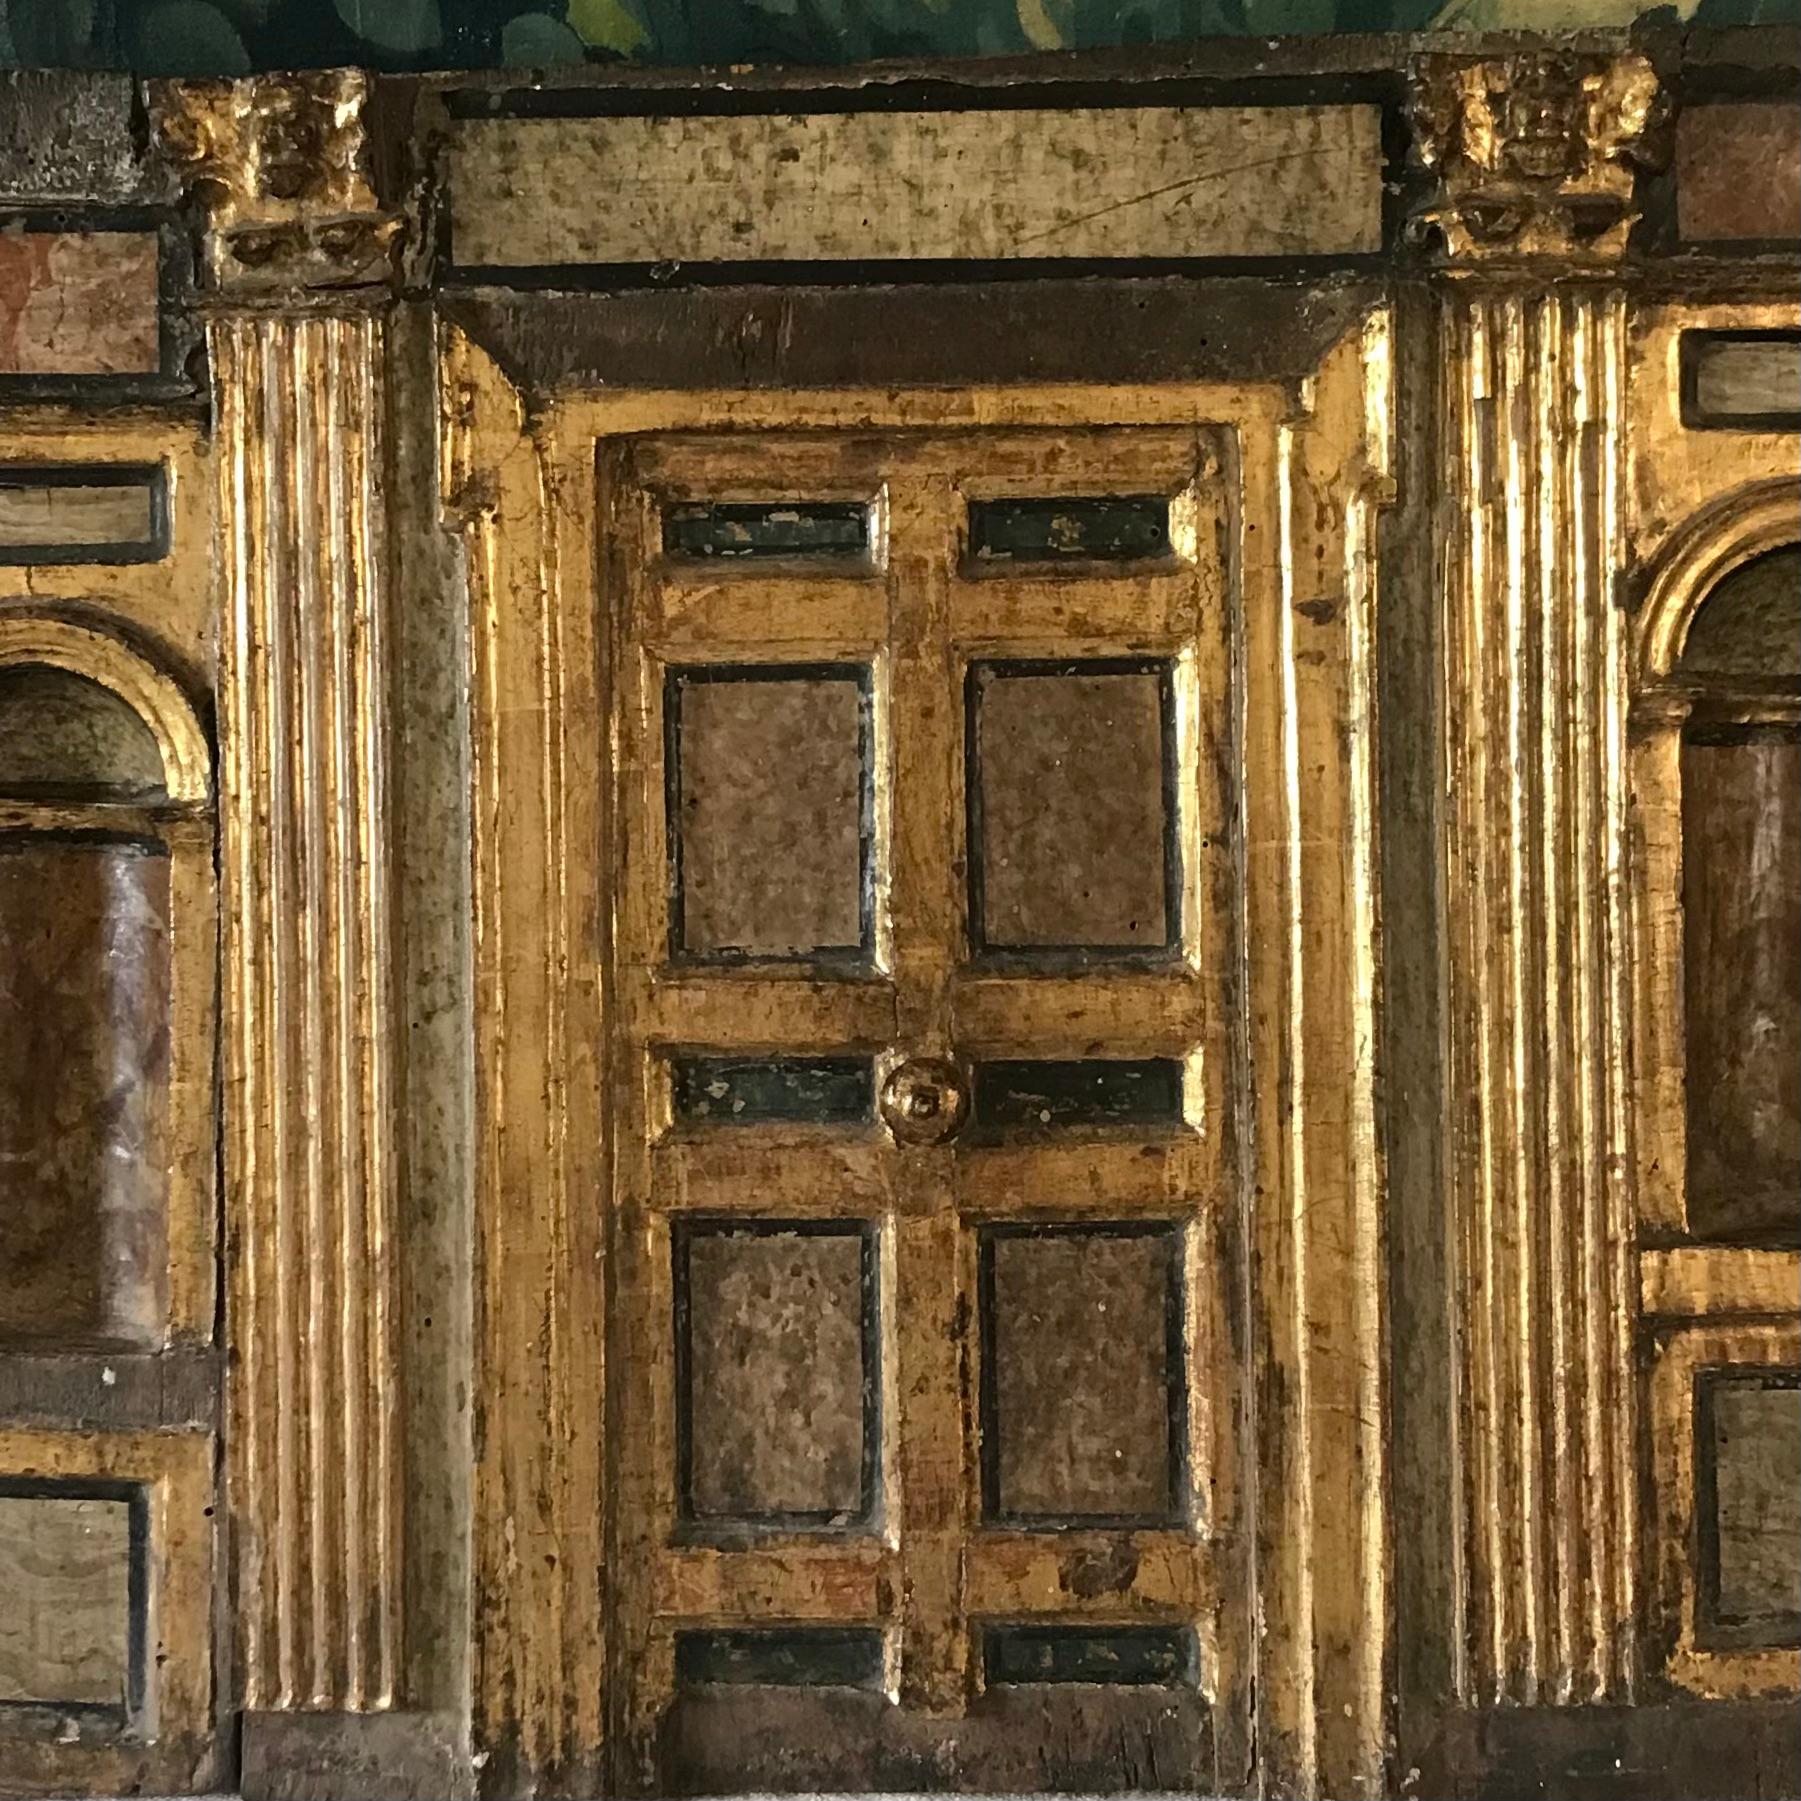 Sculpture en bois architecturale italienne de la fin du XVIIIe siècle - bois sculpté à la main, peint et doré - représentant une femme.  façade d'un bâtiment - une porte ornée avec de profondes niches de chaque côté de la porte dans une finition